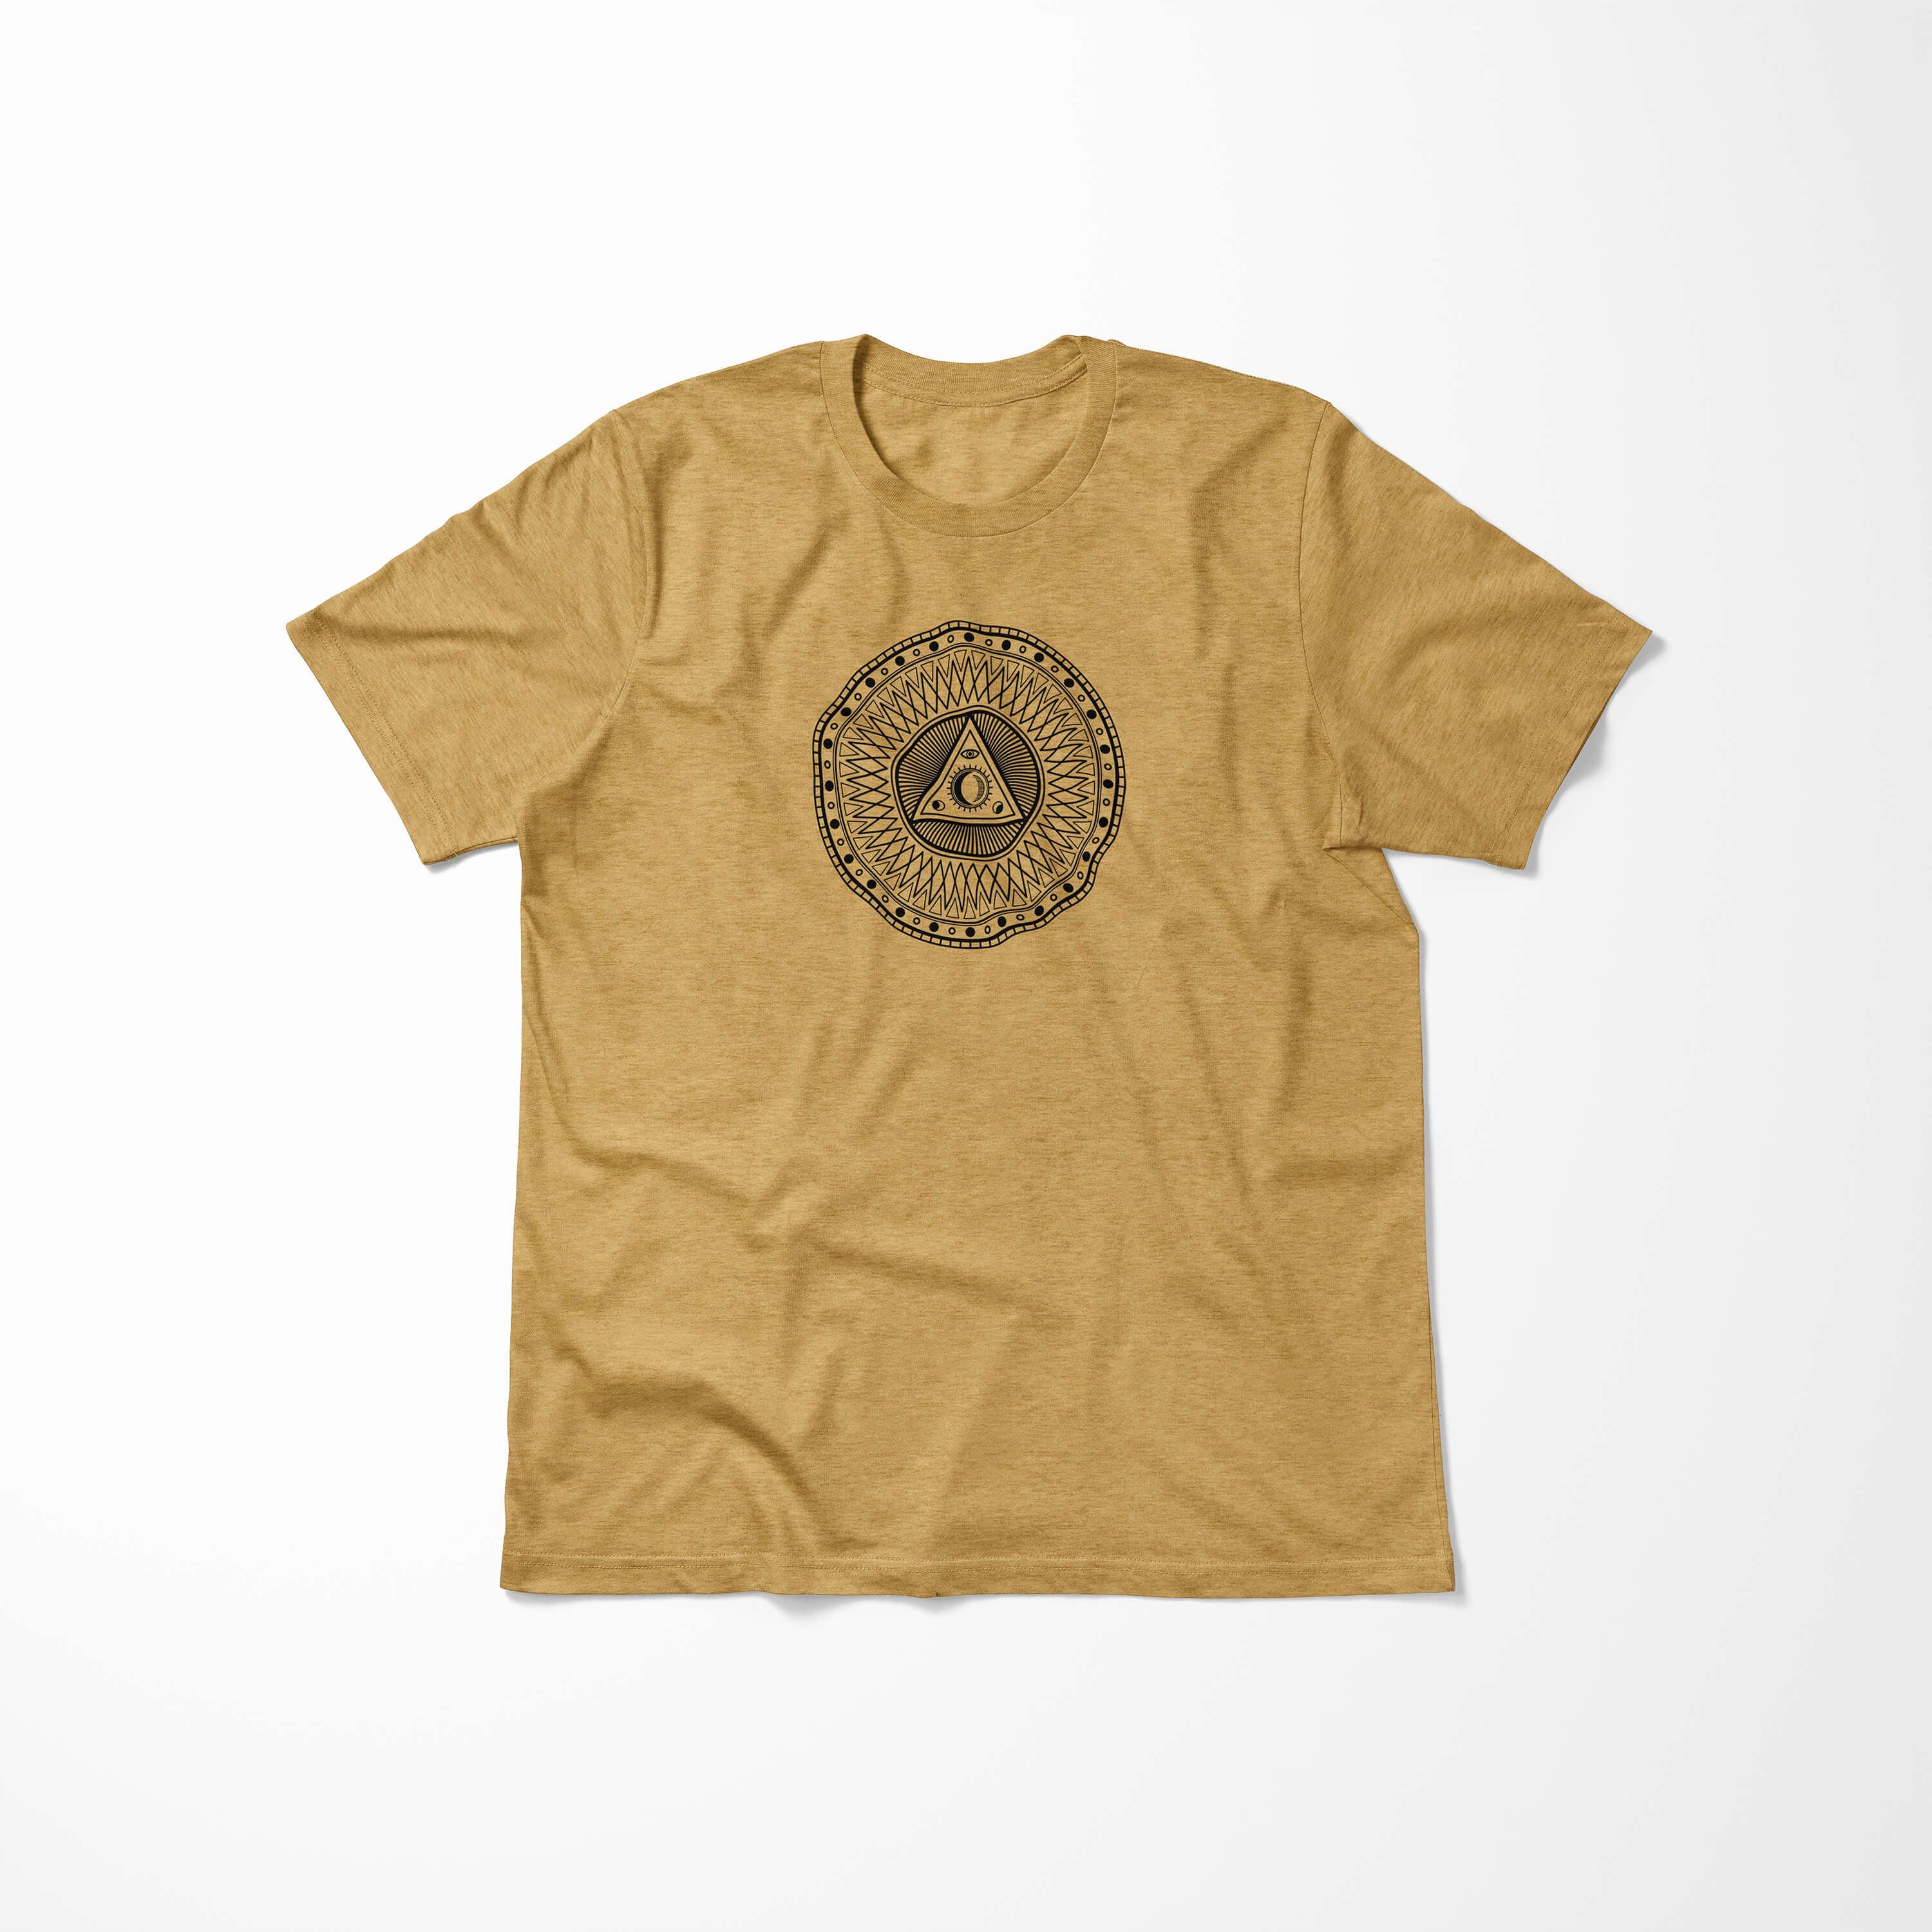 Serie Symbole Tragekomfort feine angenehmer Antique No.0032 Struktur Premium Gold T-Shirt T-Shirt Alchemy Sinus Art